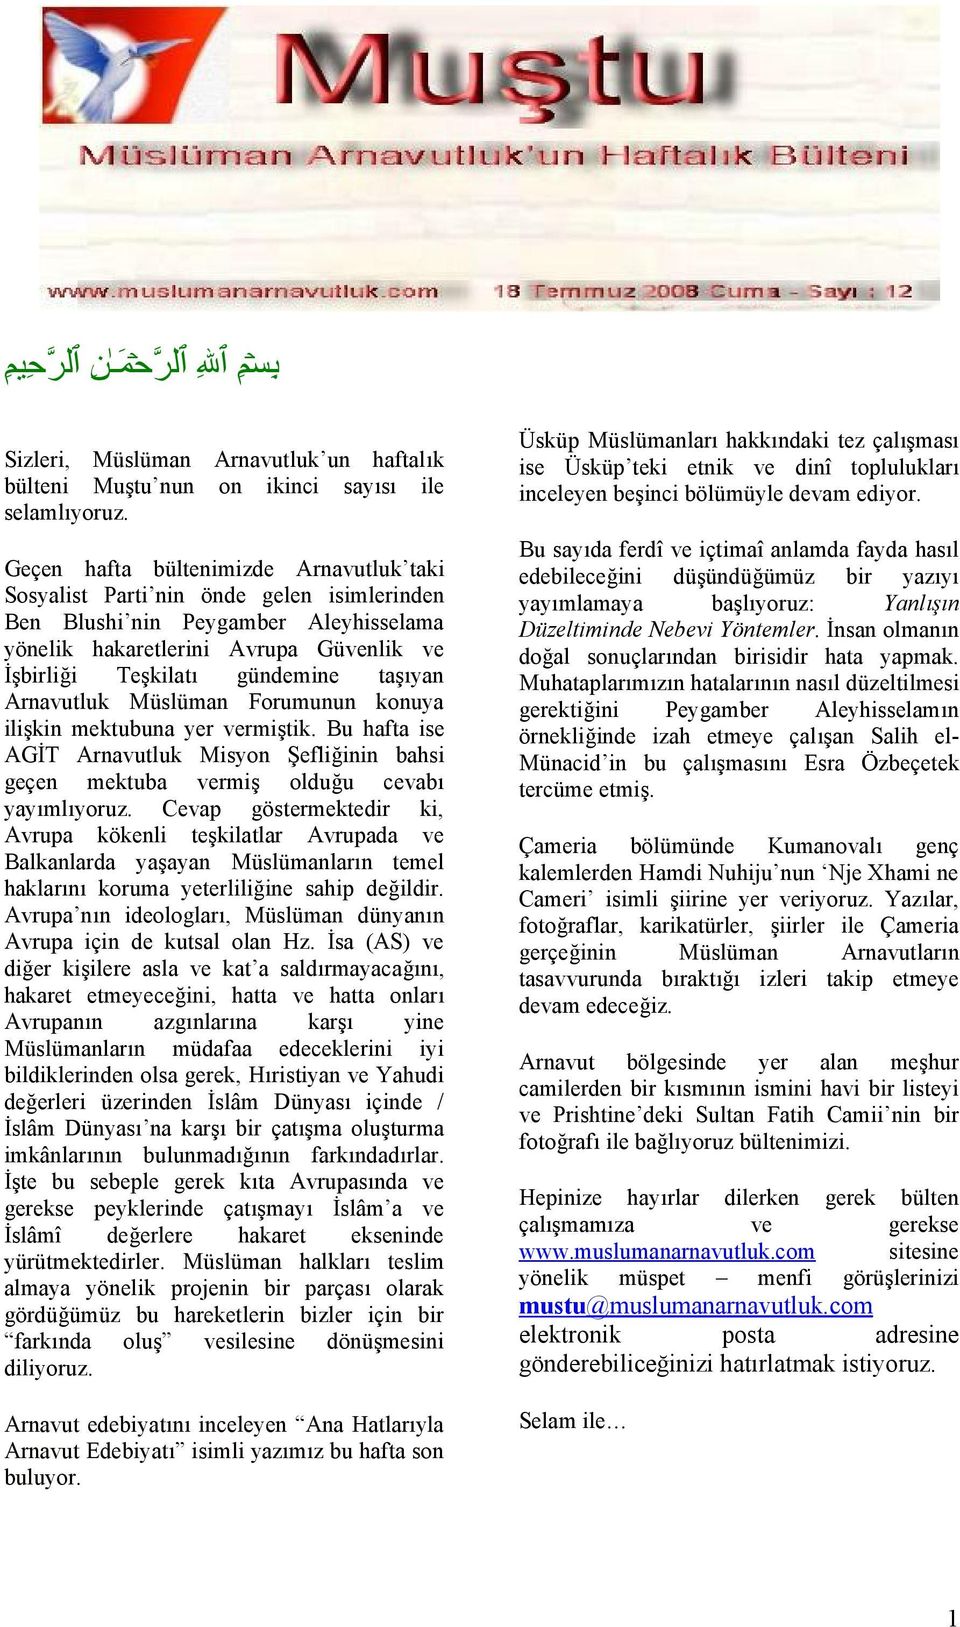 taşıyan Arnavutluk Müslüman Forumunun konuya ilişkin mektubuna yer vermiştik. Bu hafta ise AGİT Arnavutluk Misyon Şefliğinin bahsi geçen mektuba vermiş olduğu cevabı yayımlıyoruz.